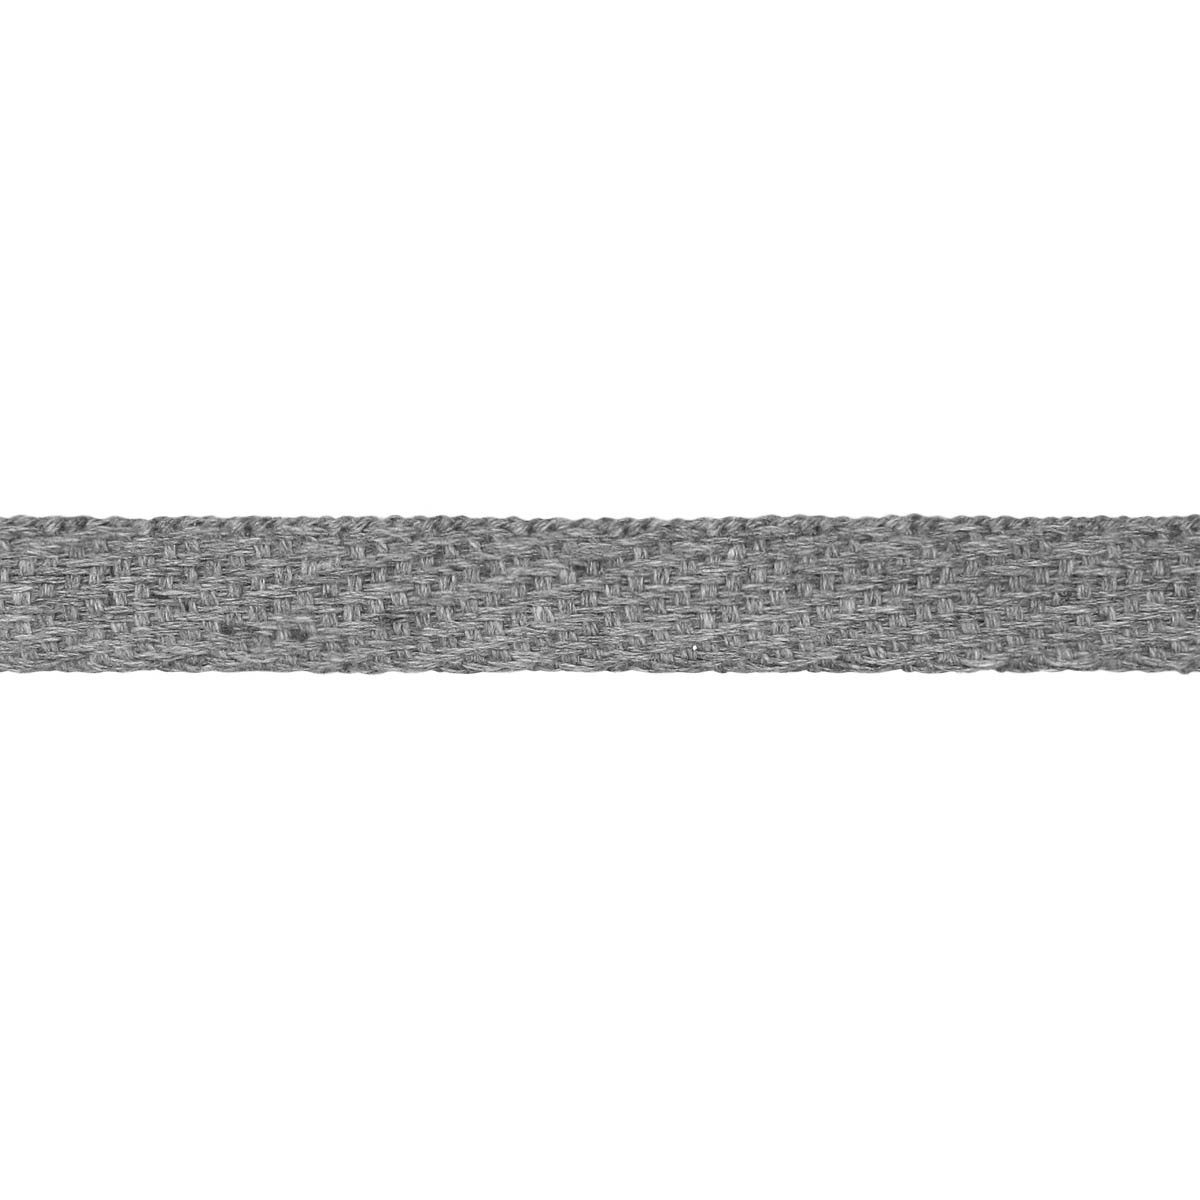  3860 х/б шир. 14 мм № 355 ДС серый (уп. 20 м) (17/30)  в .